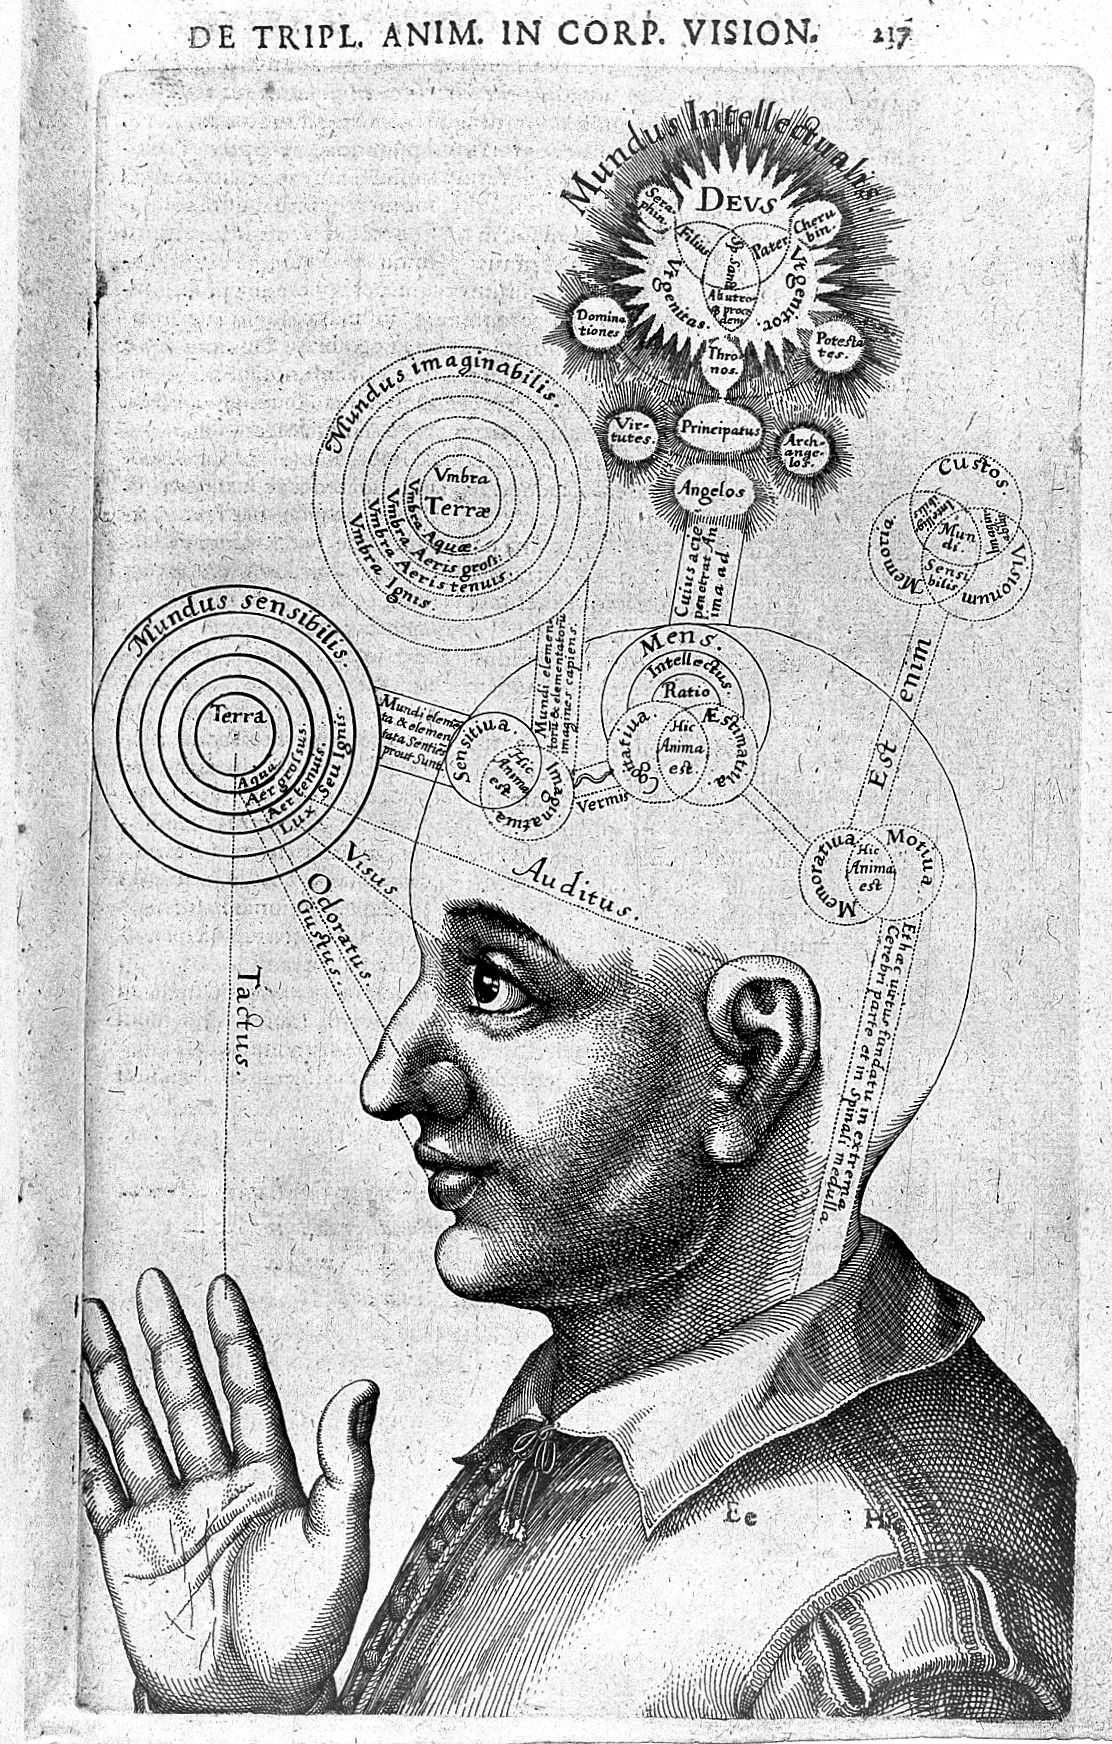 Robert Fludd, De praeternaturali utriusque mundi historia 1621